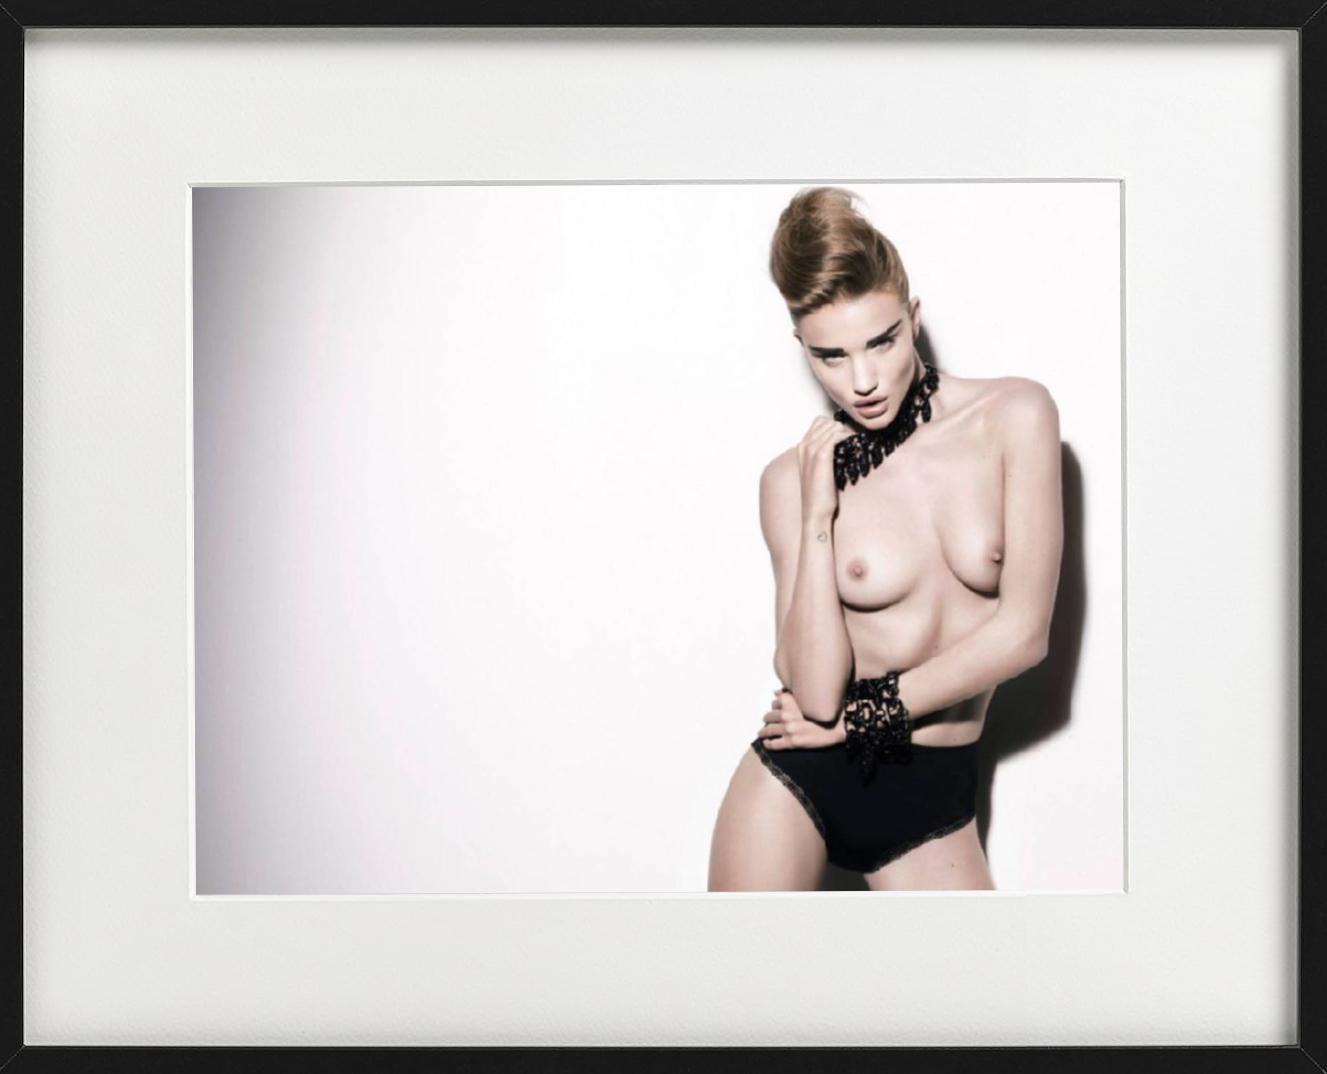 Rosie Huntington-Whitley – nackt in schwarzem Schmuck, Kunstfotografie, 2010 (Grau), Nude Photograph, von Rankin